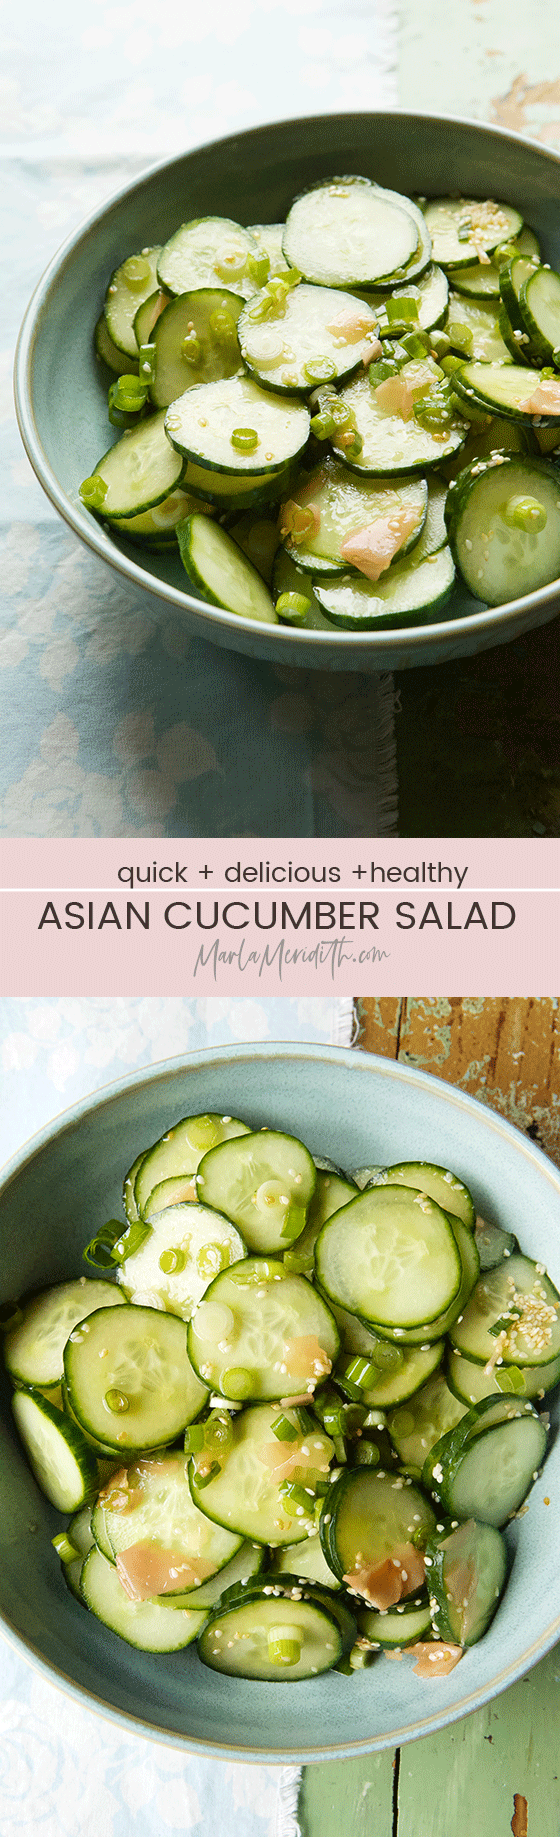 Quick, easy & delicious Asian Cucumber Salad recipe